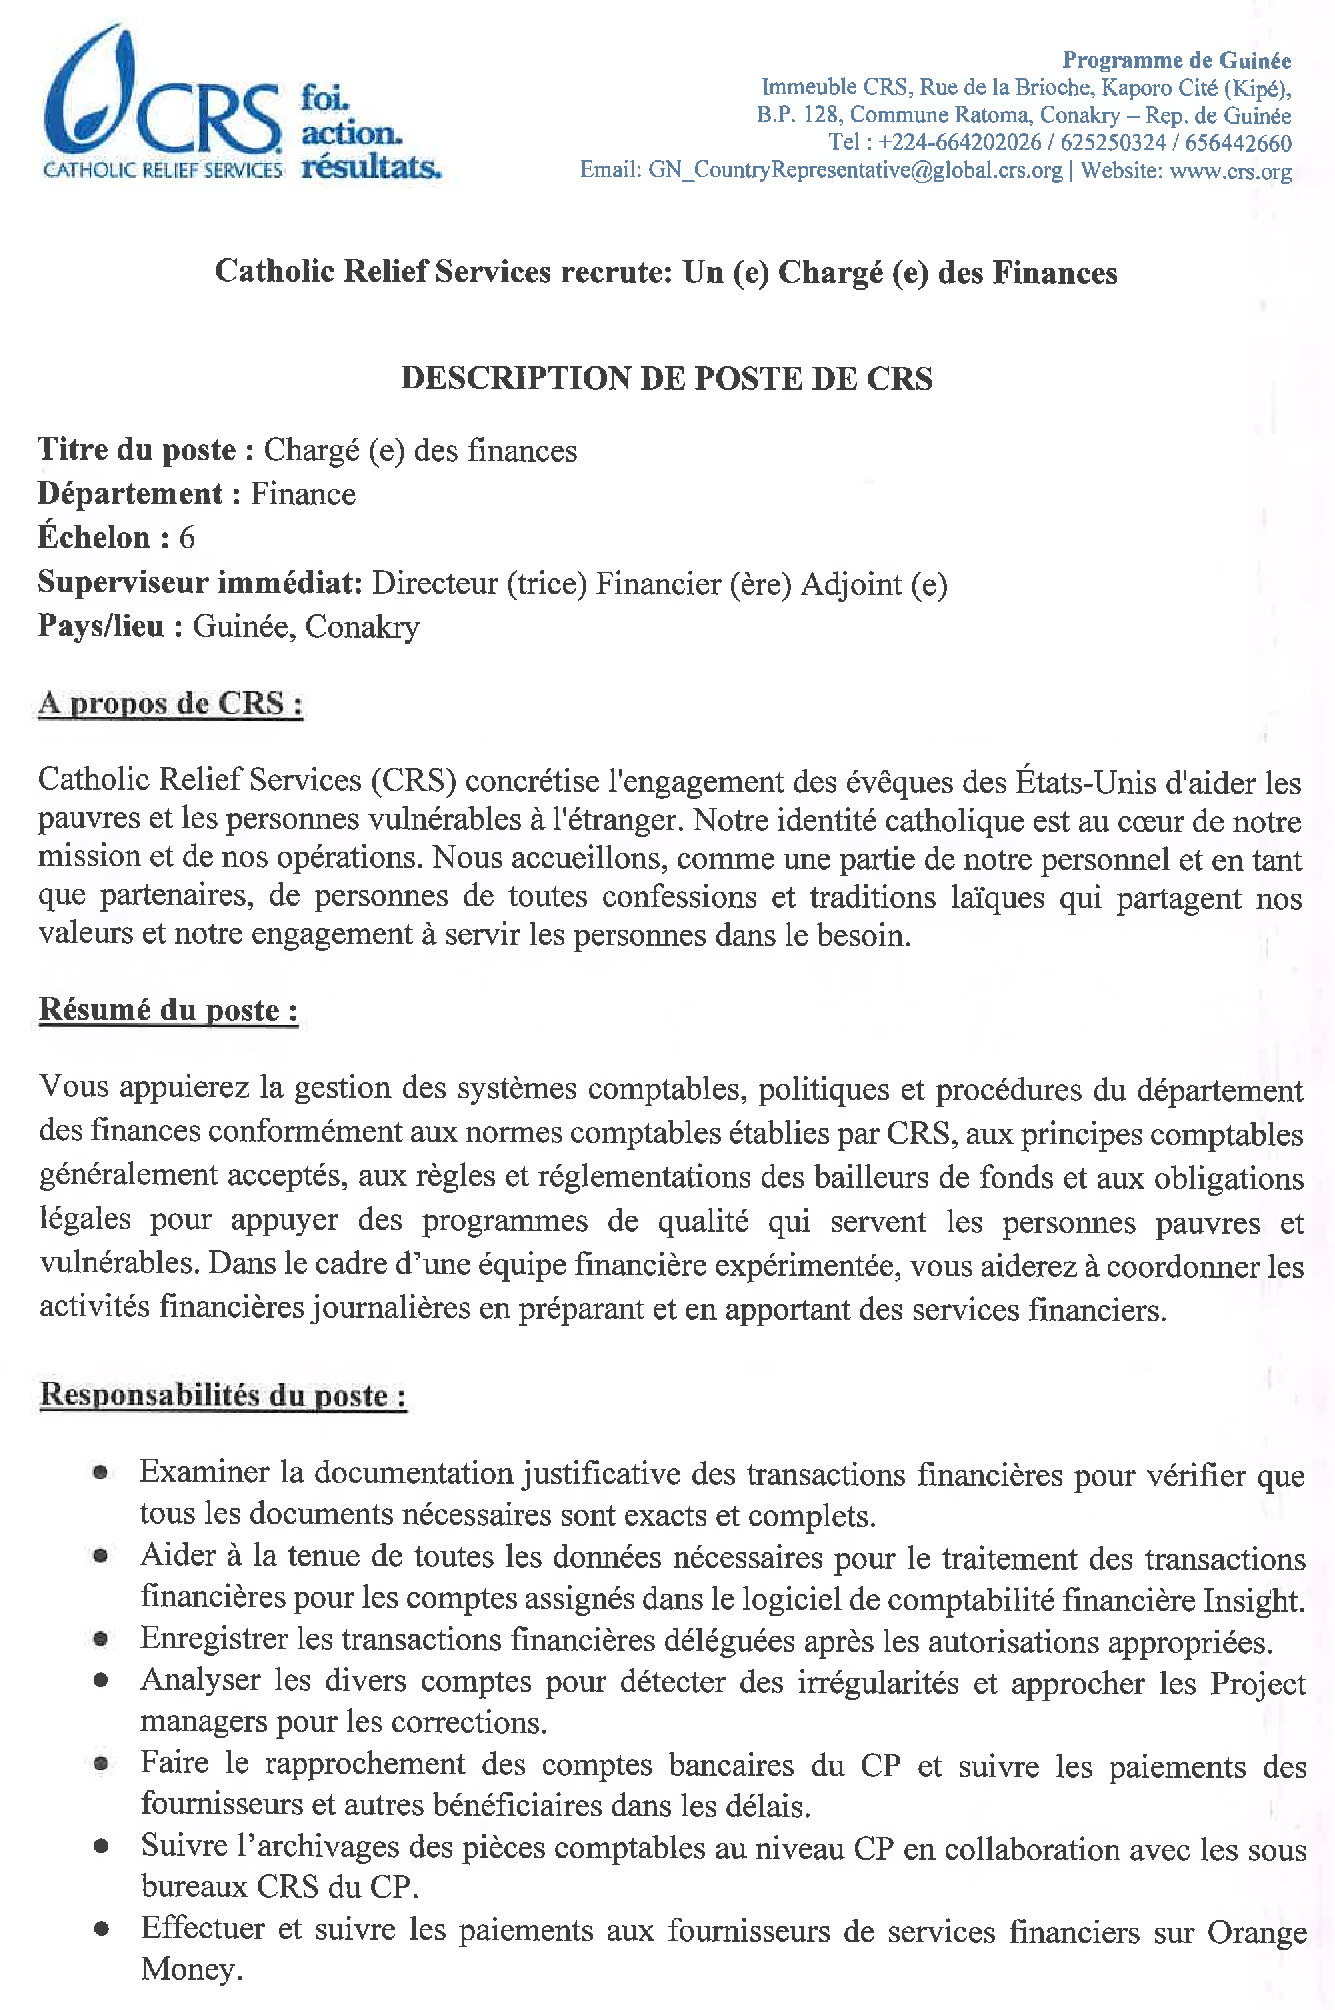 JD recrutement de chargé (e) des finances pour CRS Guinée | page 1